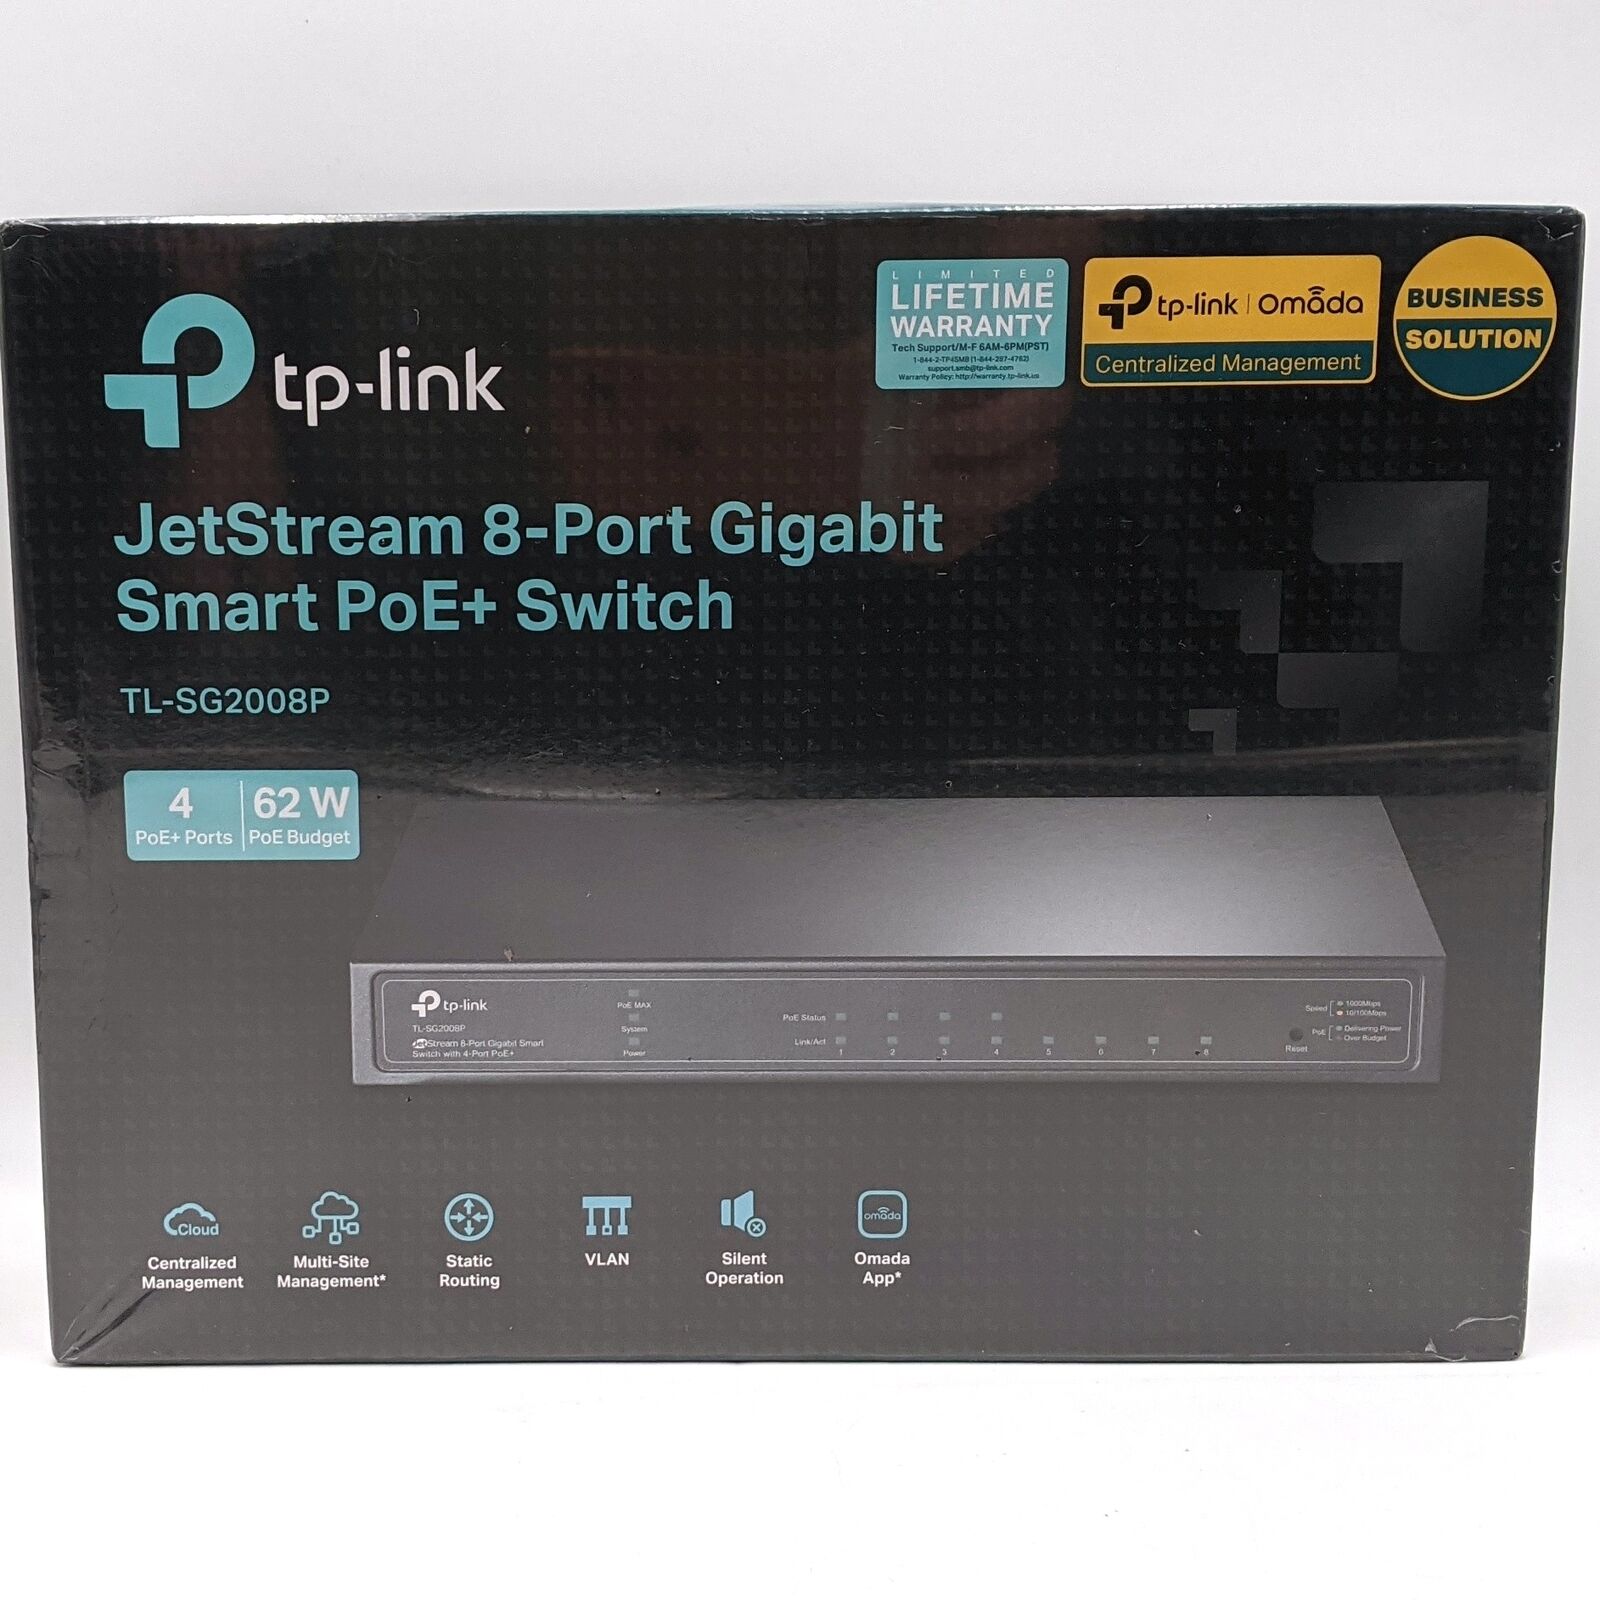 TP-Link JetStream 8-Port Gigabit Smart PoE+ Switch TL-SG2008P